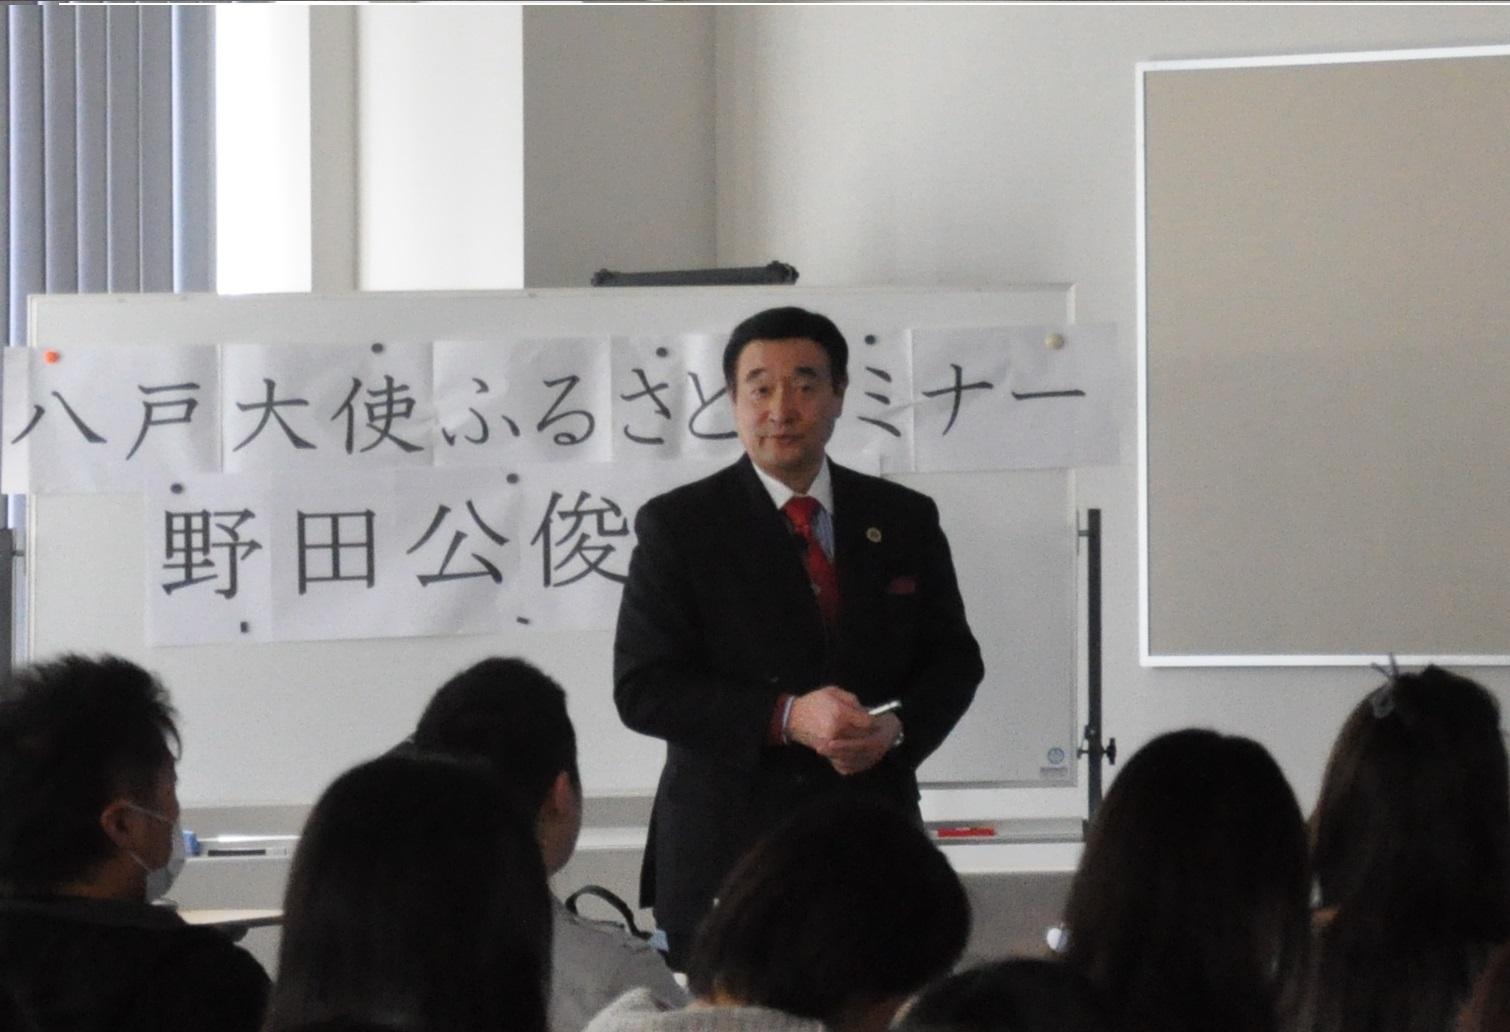 生徒たちの前に立って話をしている野田先生の写真